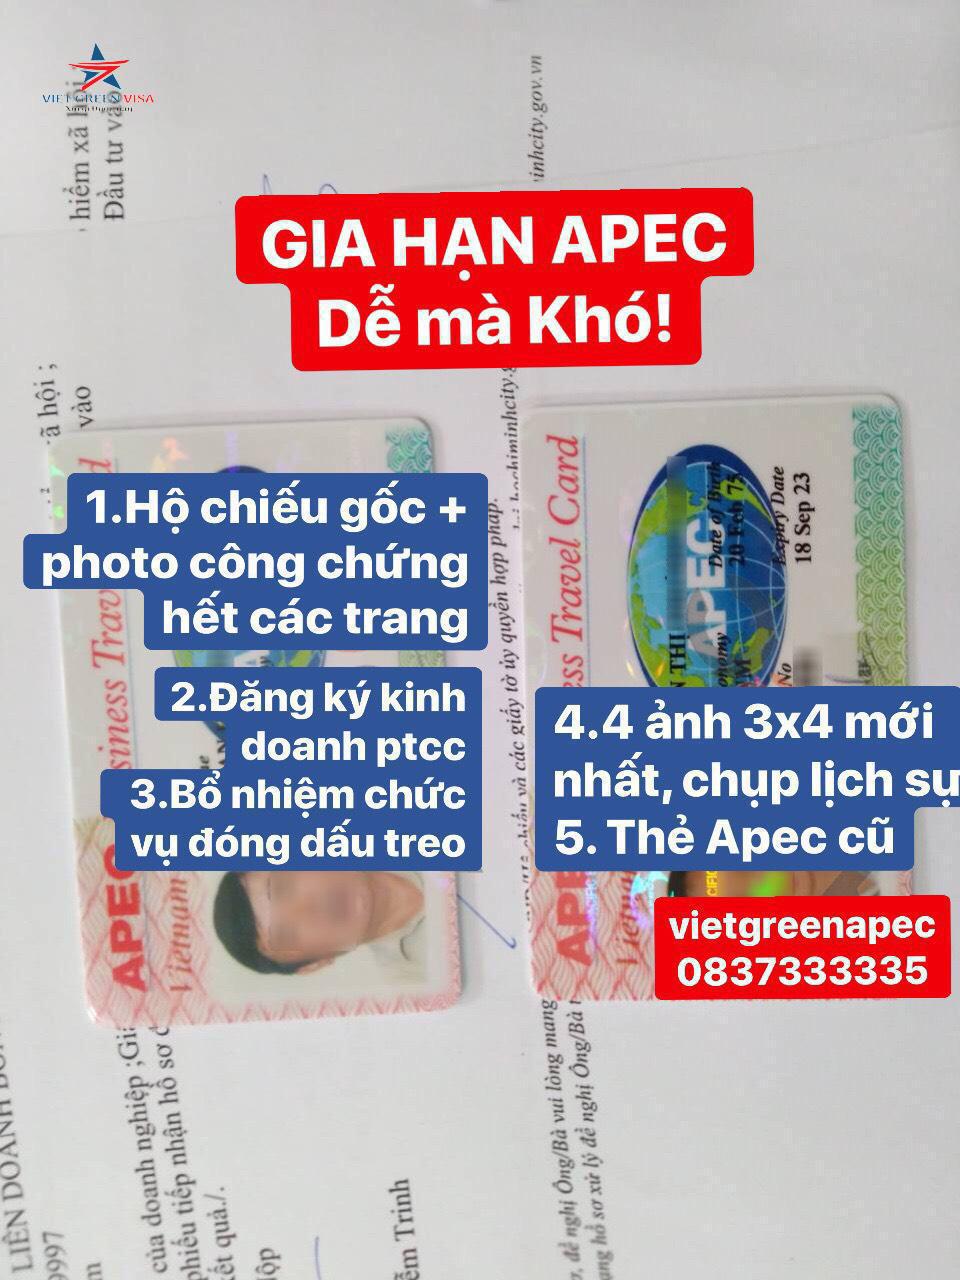 Dịch vụ làm thẻ Apec tại Thái Bình, Làm thẻ Apec ở Thái Bình